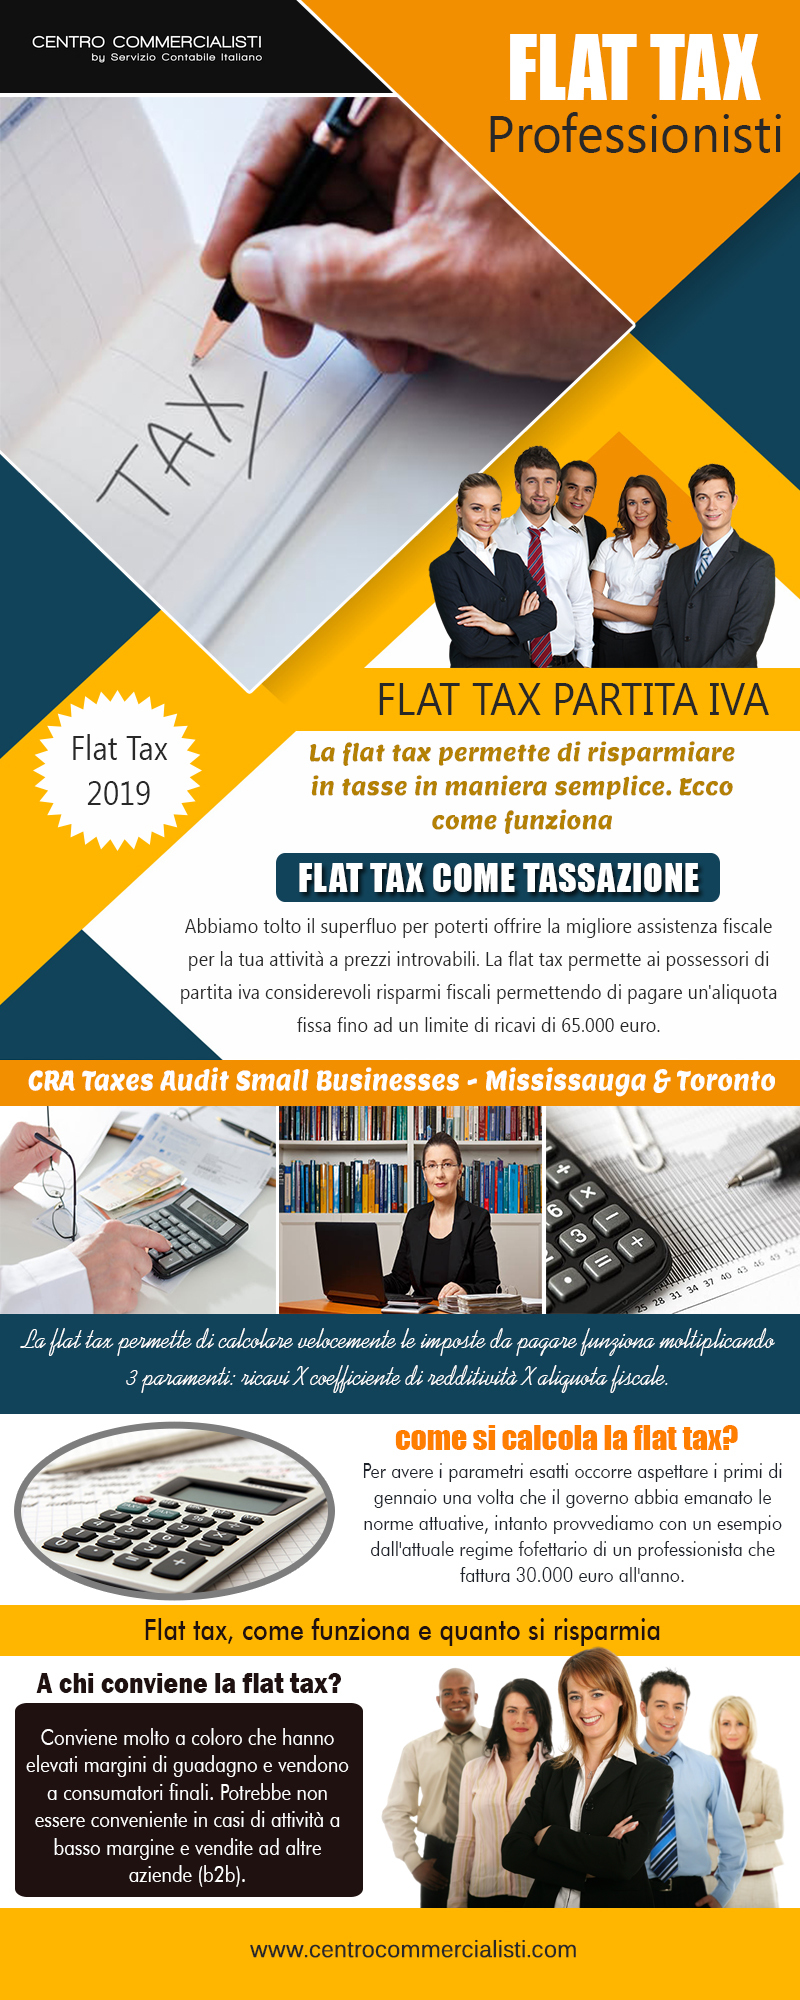 flat tax professionisti	